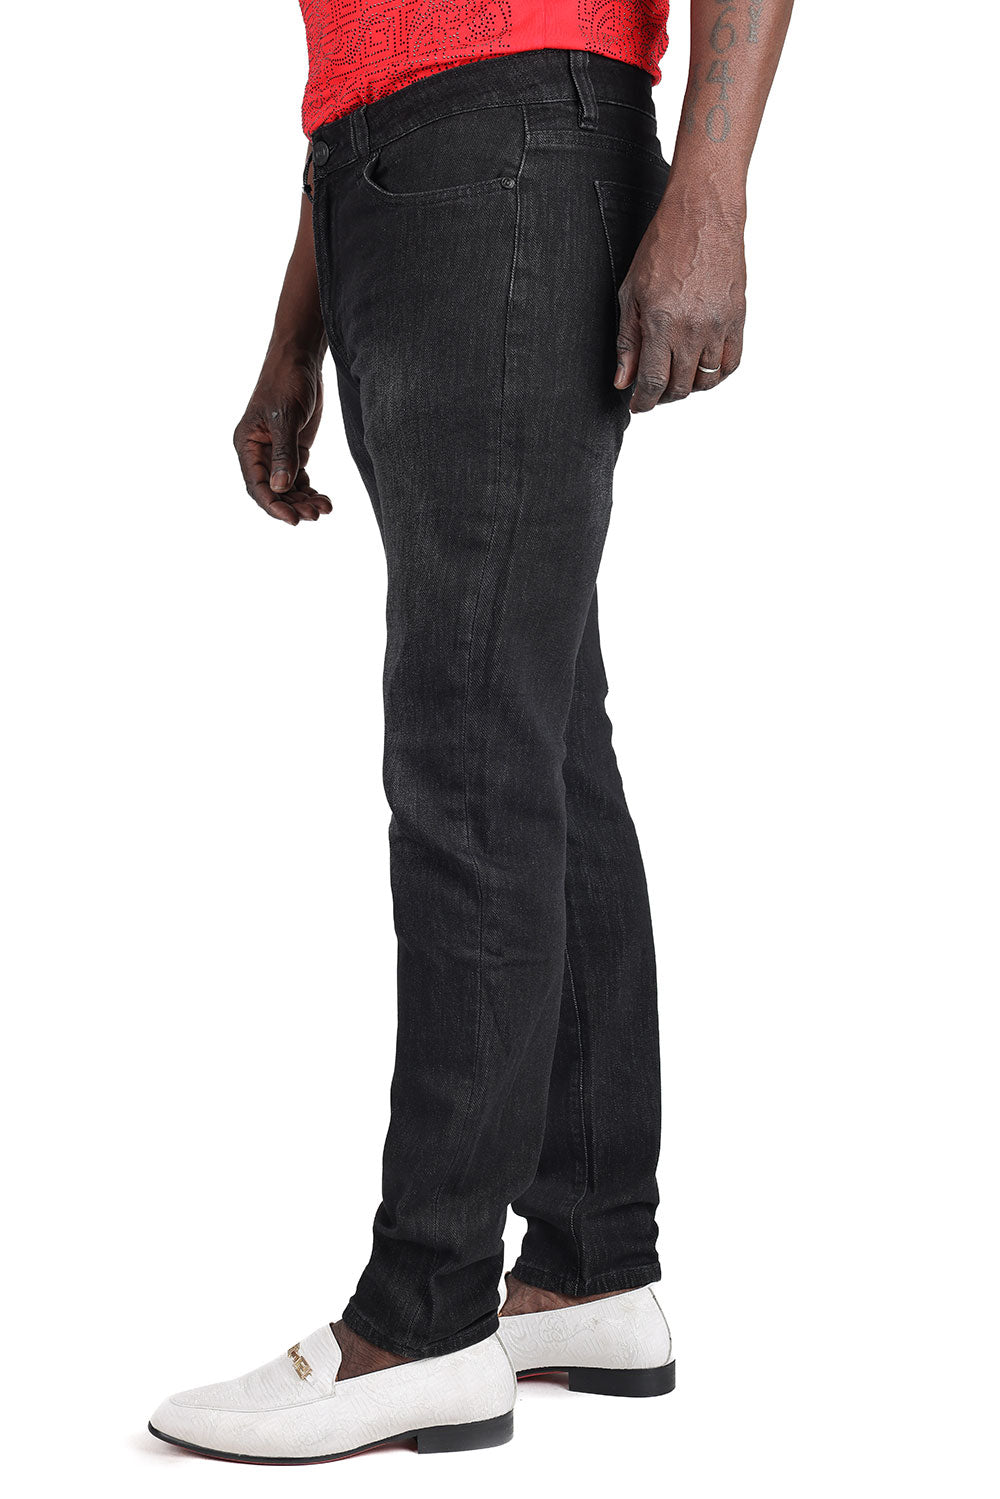 Barabas Men's Washed Black Premium Denim Jeans 2JE01SL